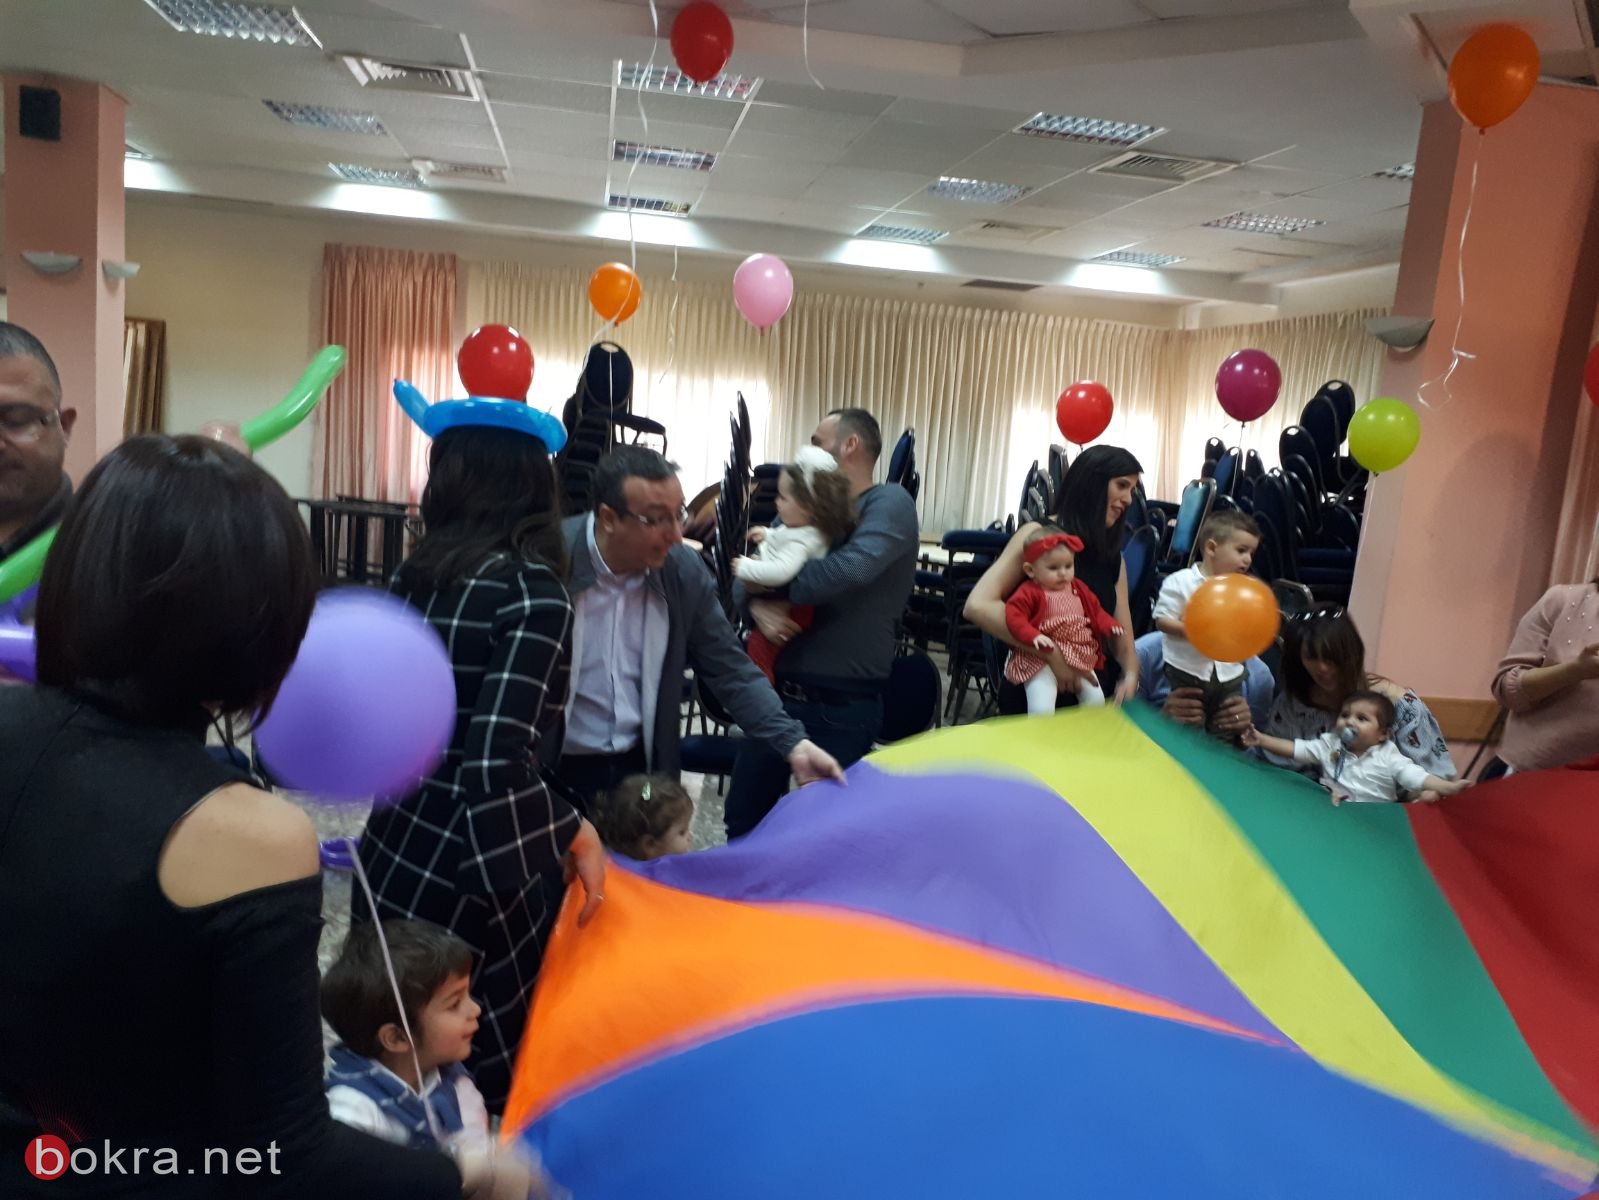 حضانة الياسمين التابعة لجمعية سنبدأ، في الناصرة، تحتفل بعيد الام بأجواء رائعة.-0